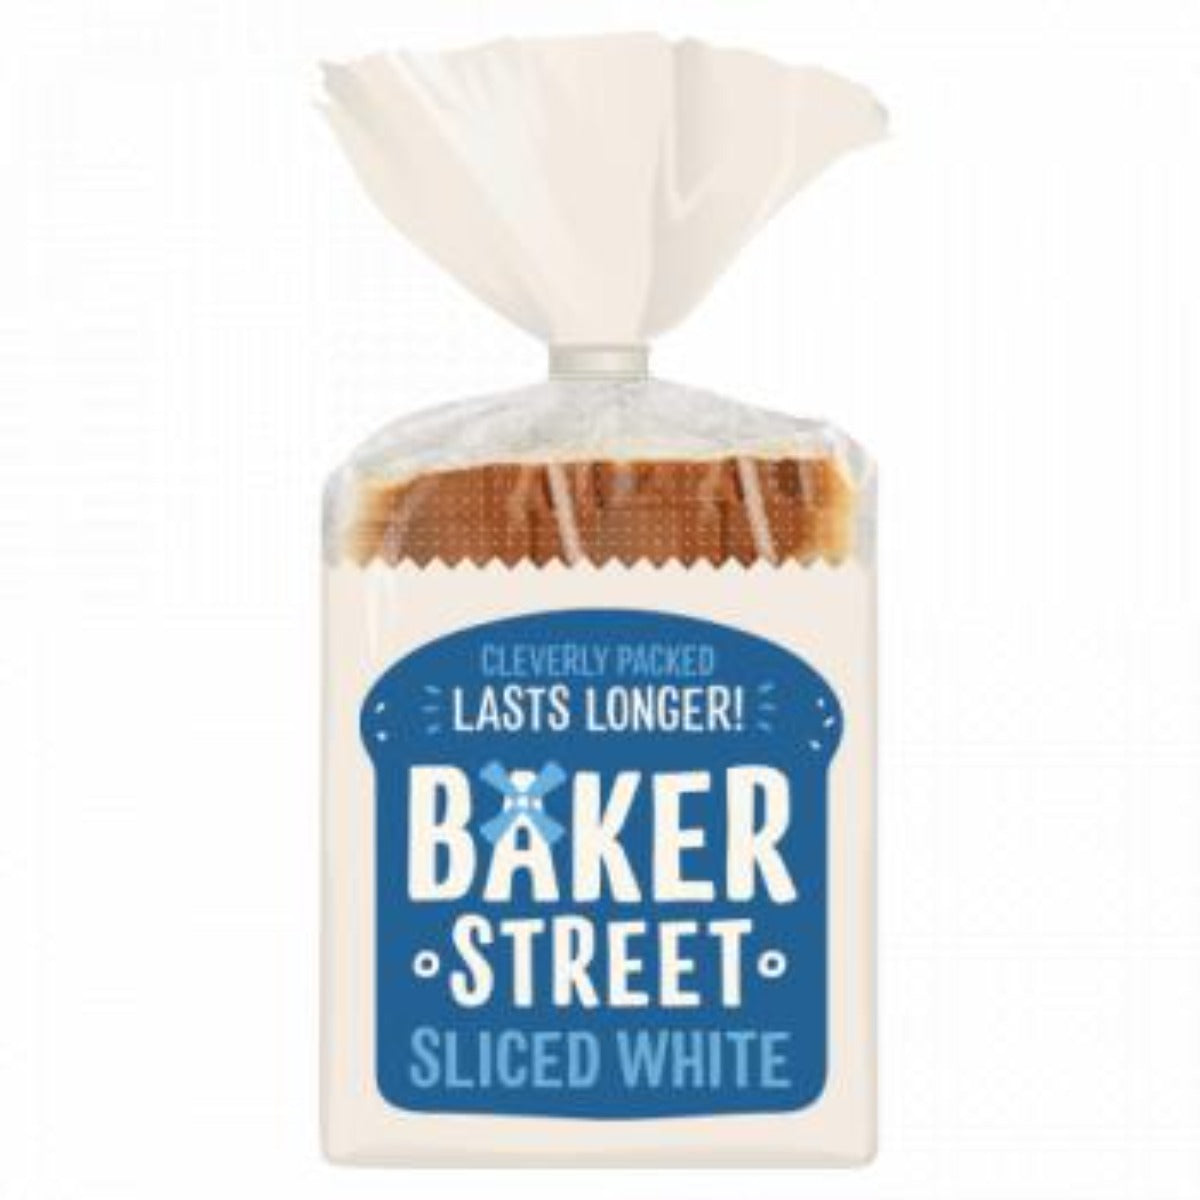 Baker Street Sliced White 550g